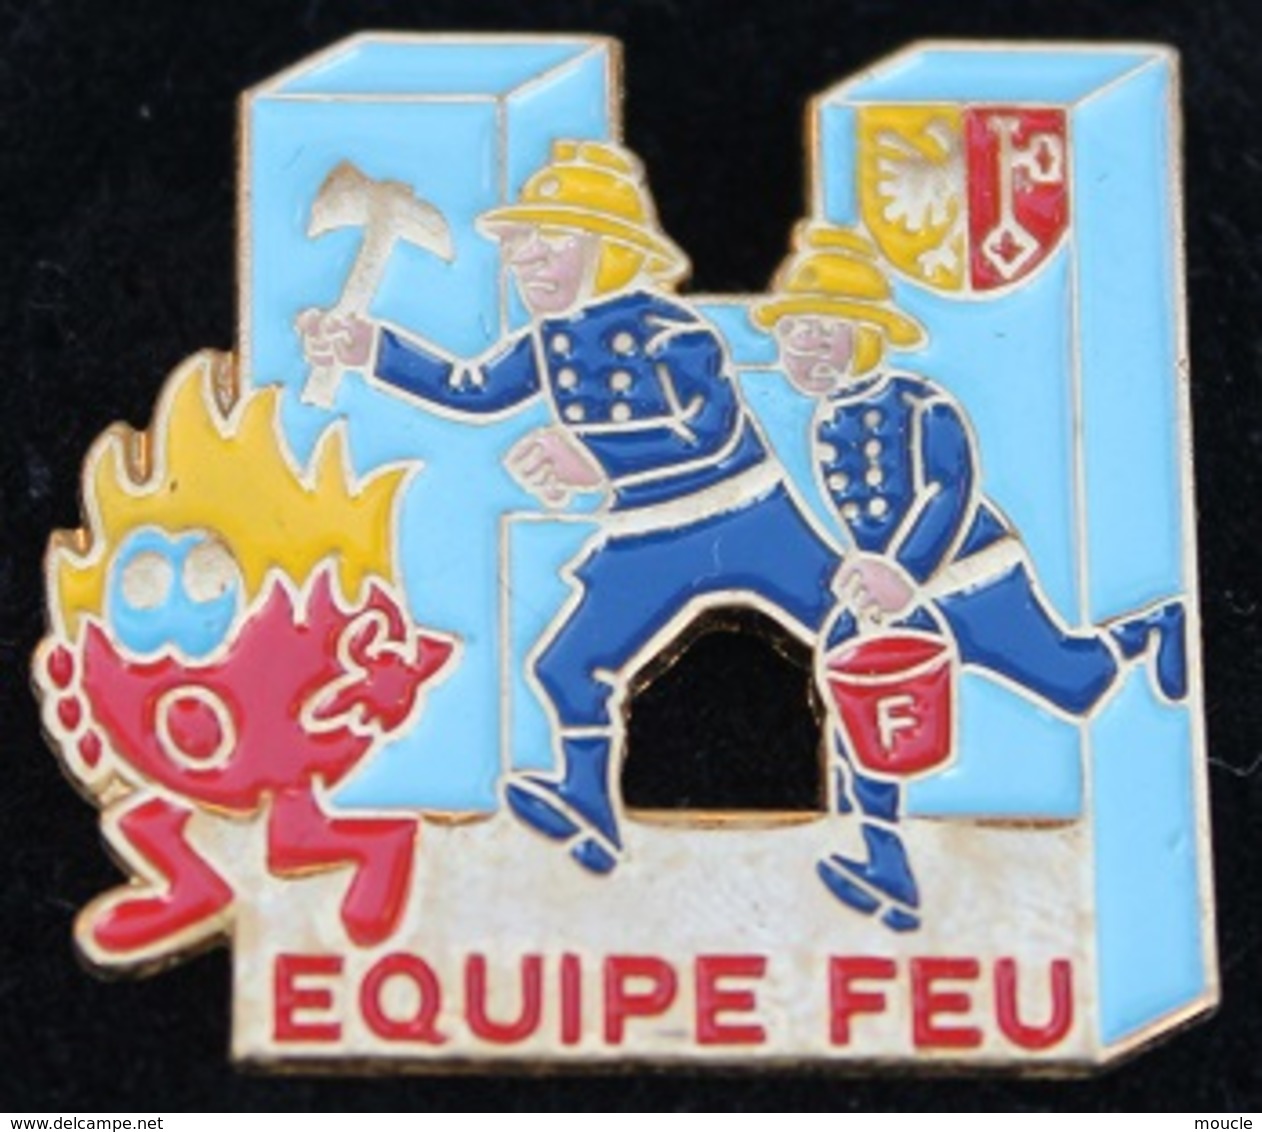 SAPEURS POMPIERS DES HUG - HÔPITAL UNIVERSITAIRE DE GENEVE - EQUIPE FEU - SUISSE -      (21) - Feuerwehr